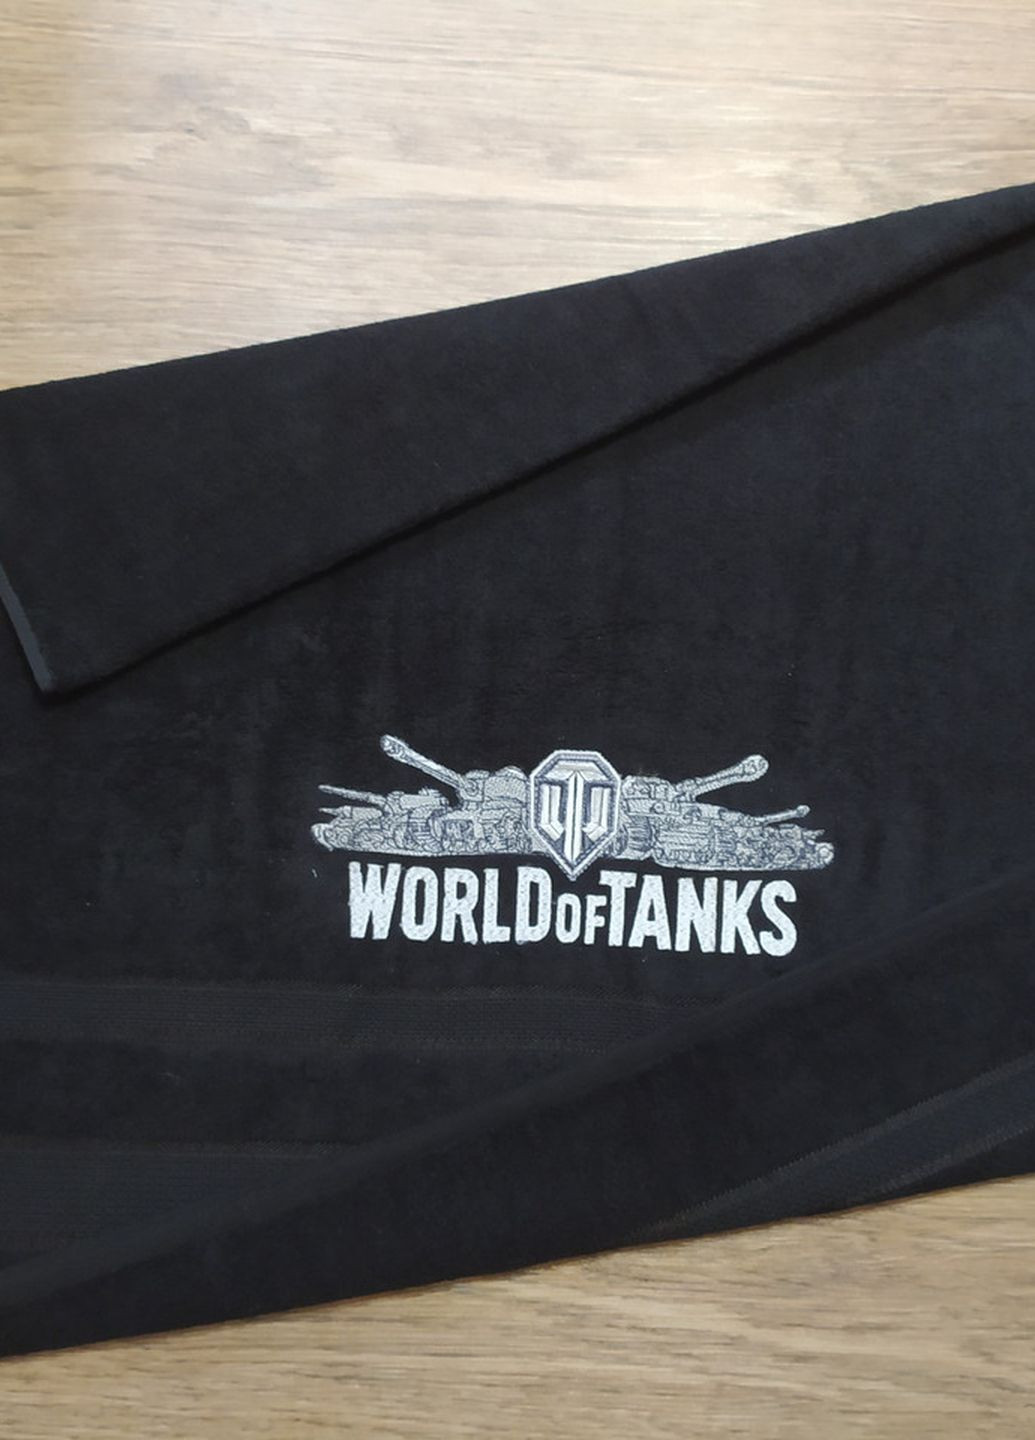 No Brand полотенце с вышивкой махровое банное 70*140 черный world of tanks игроку танкисту 00451 однотонный черный производство - Украина